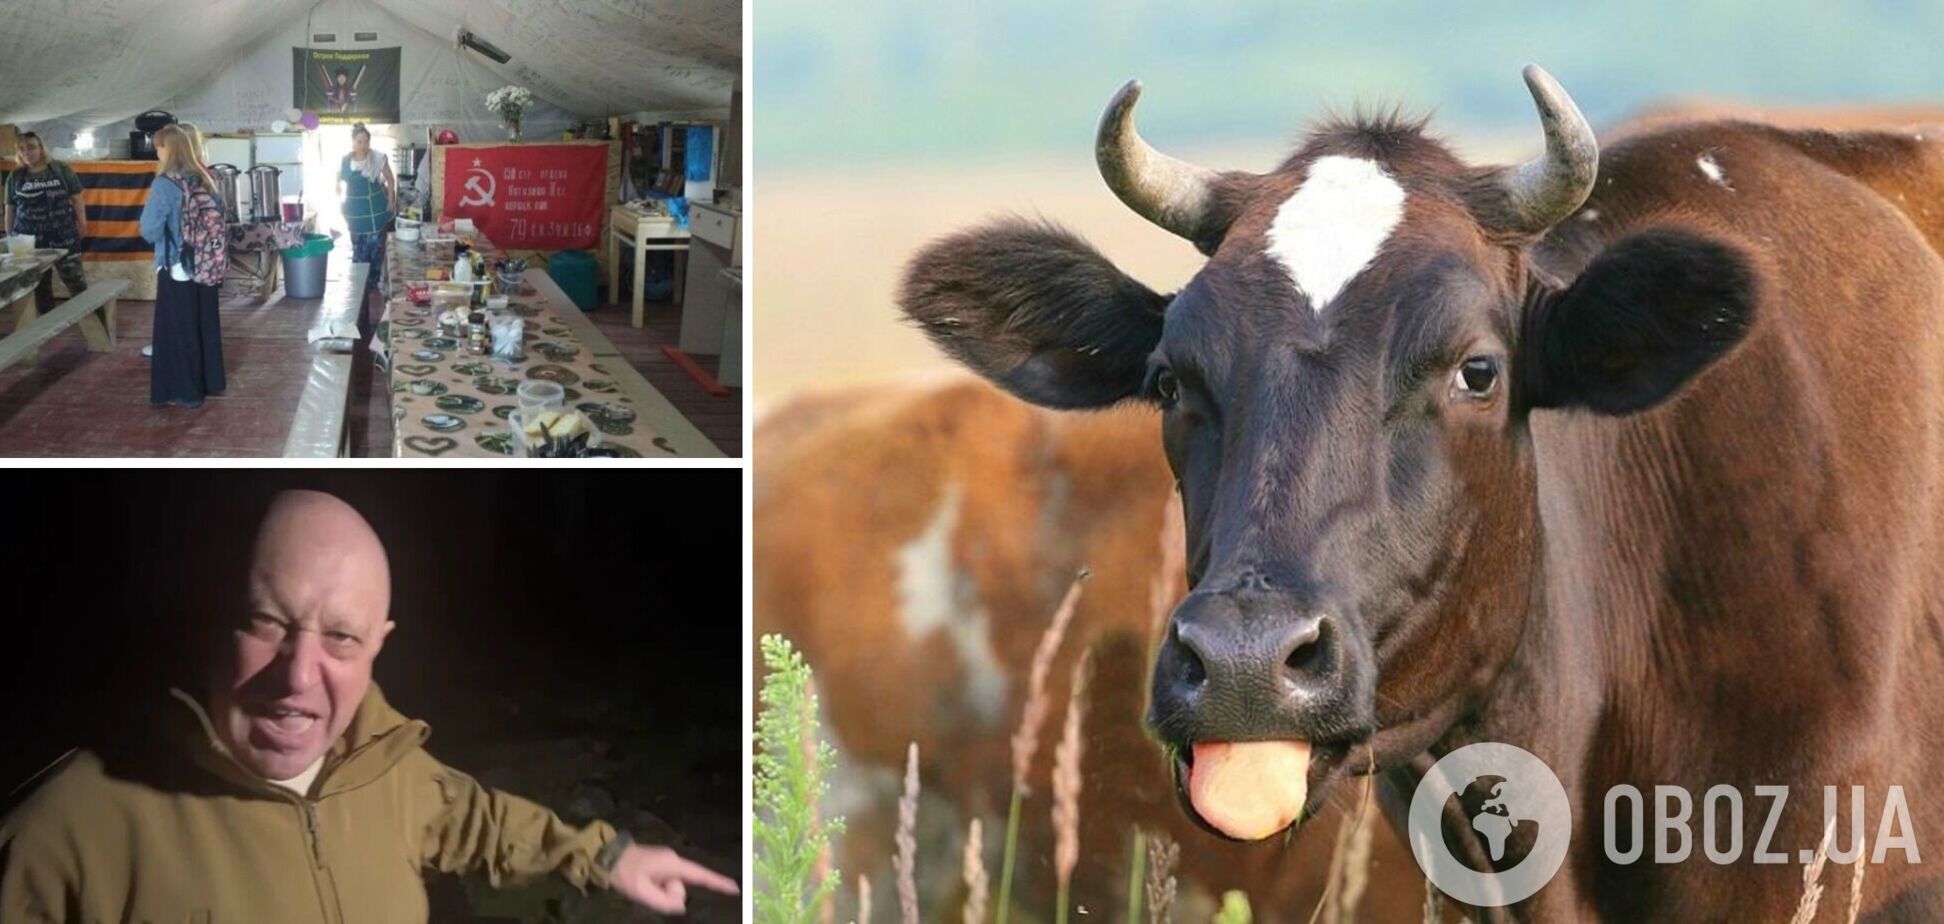 'Шойгу, где коровы?!' Буряты в Крыму объявили сбор на корову, чтобы прокормить оккупантов